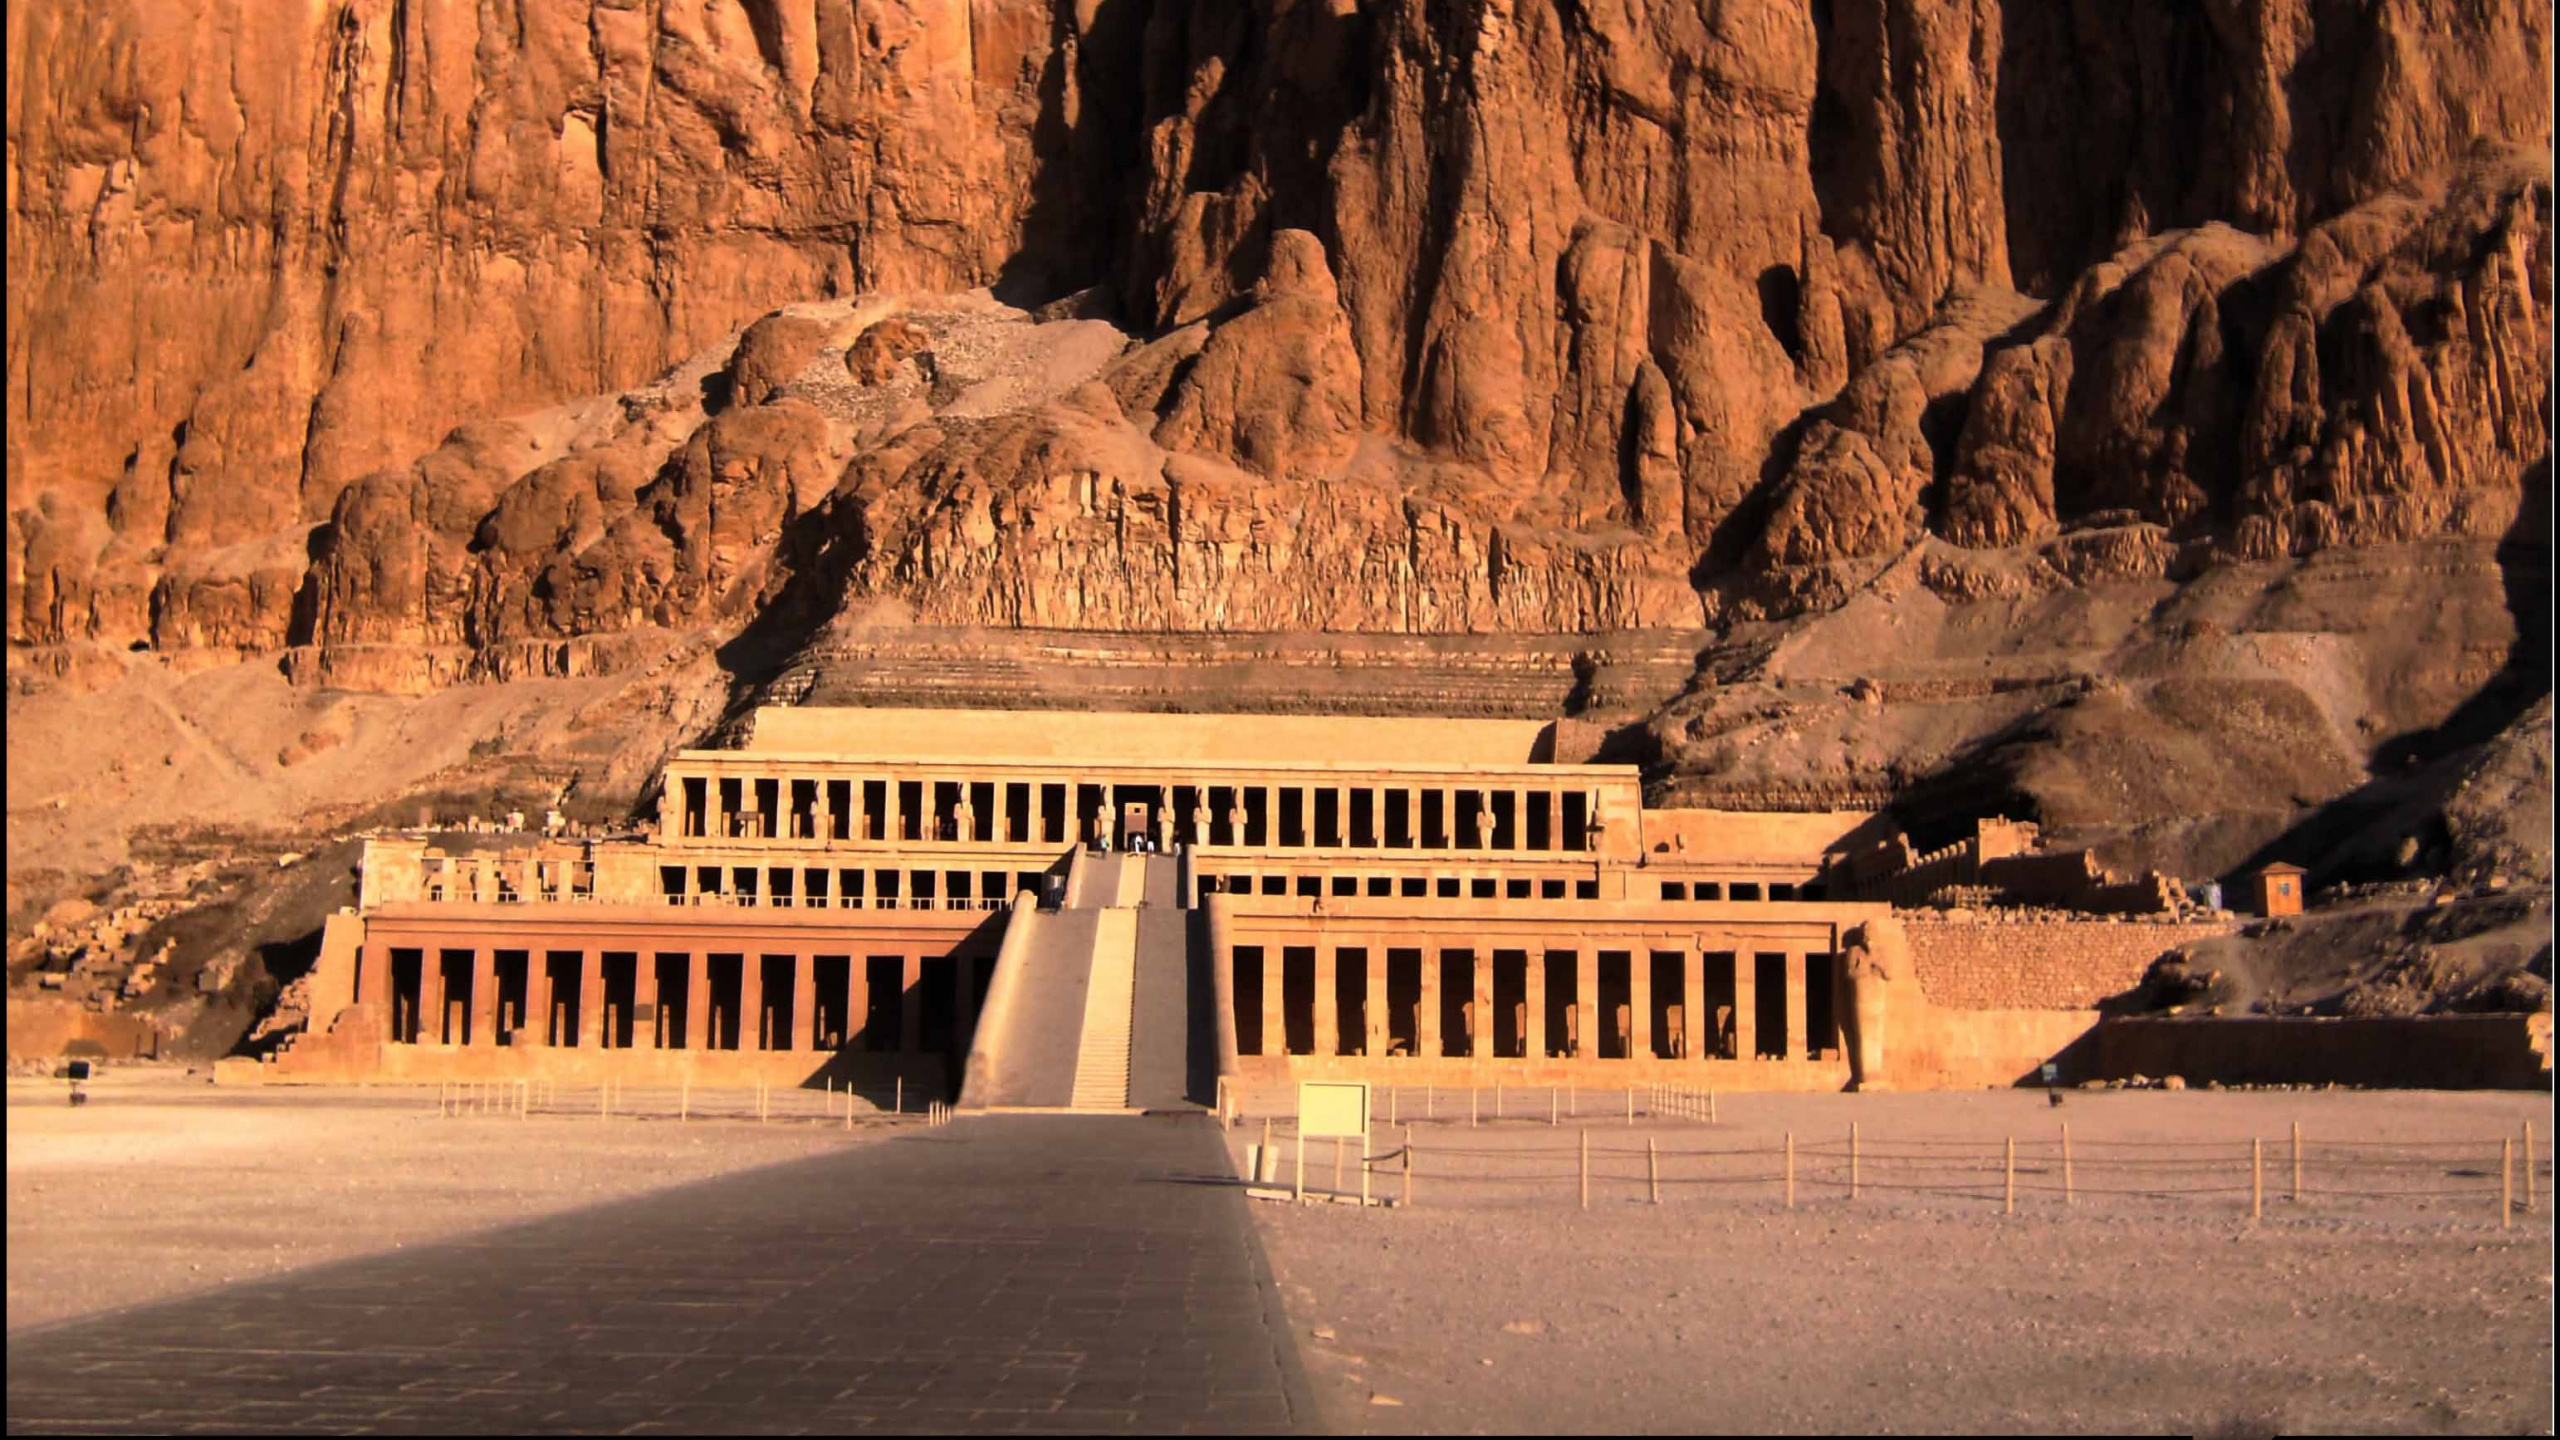 祭庙, 里程碑, 历史站, 埃及神庙, 形成 壁纸 2560x1440 允许